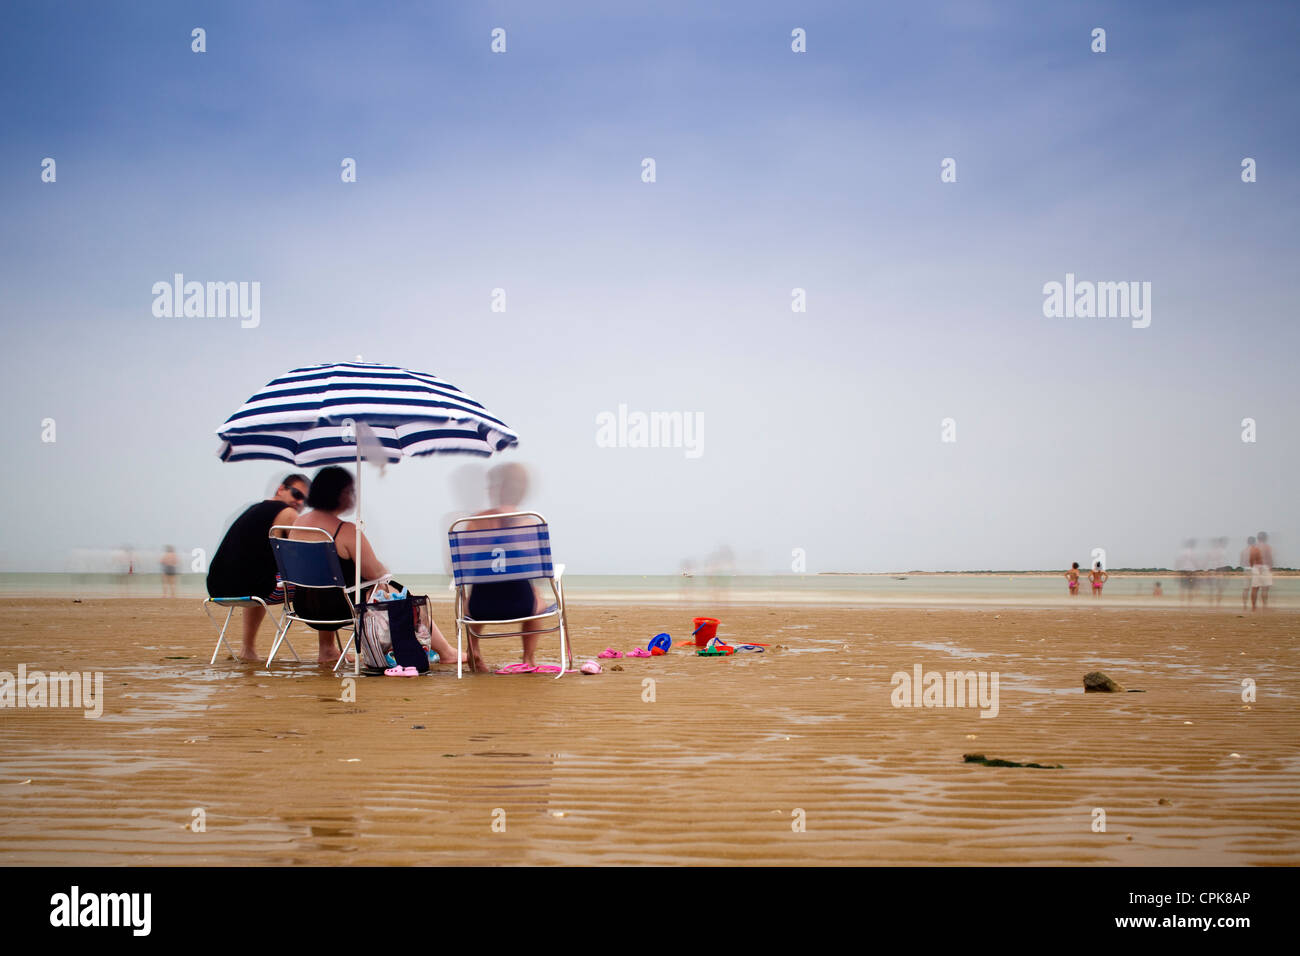 Les gens sur la plage, Sanlucar de Barrameda, Espagne. La lumière du jour d'une exposition longue, tourné par l'utilisation de filtres neutres. Banque D'Images